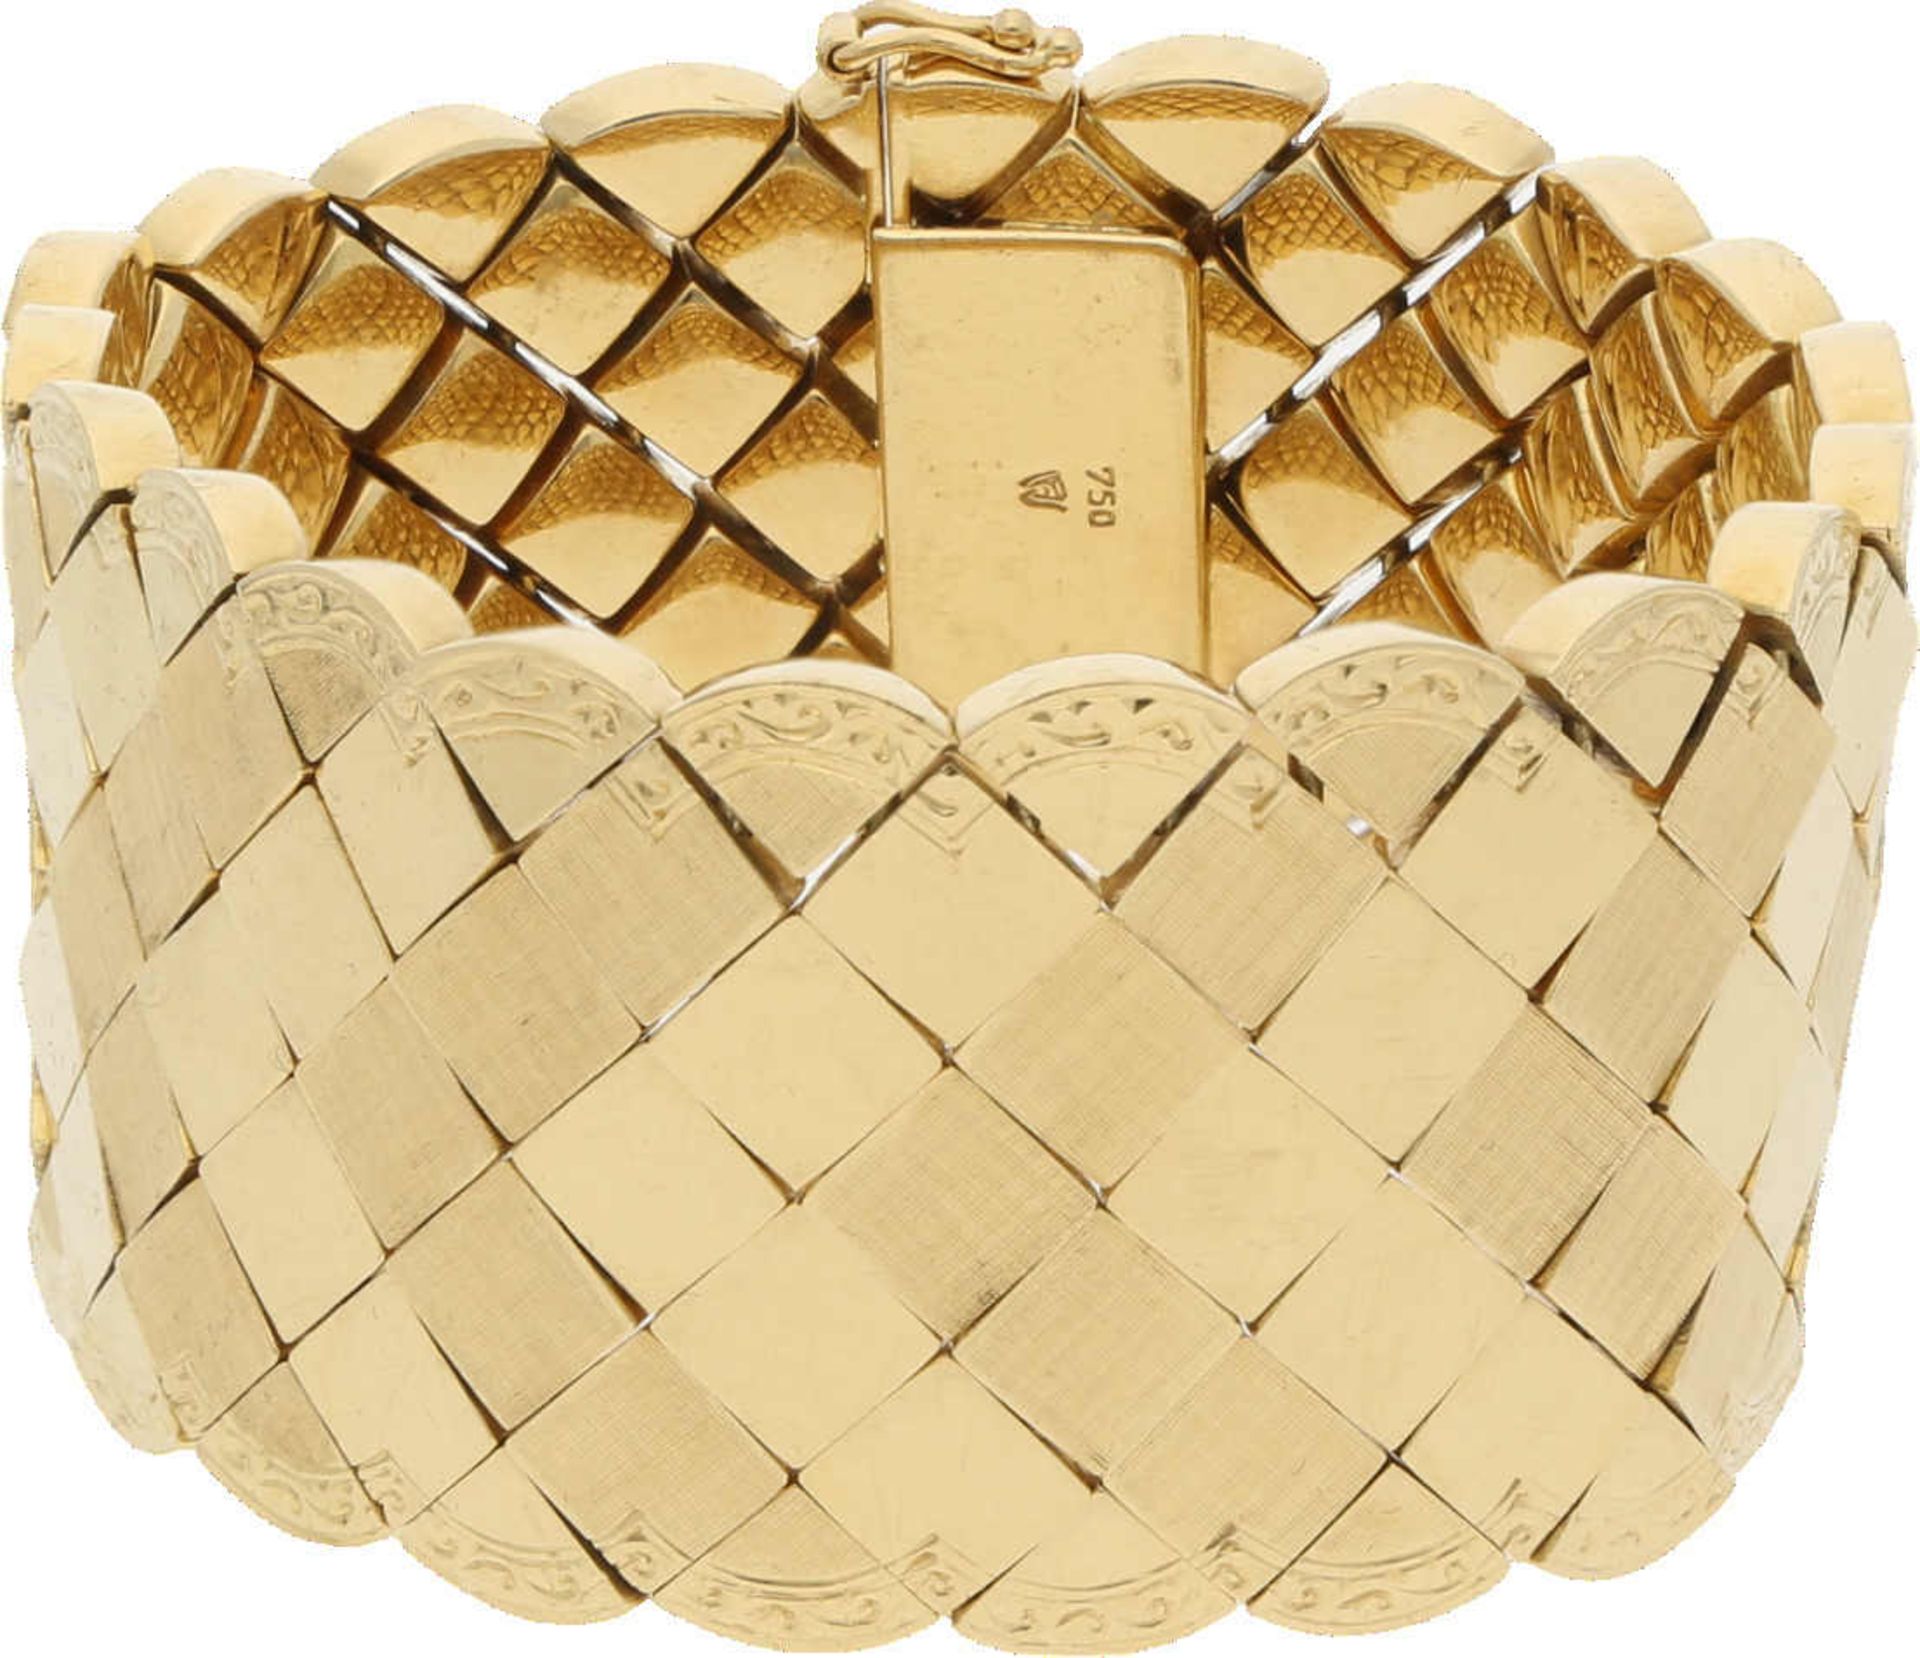 Gold-Armband Prachtvolles Design in Gelbgold 18K mit hübsch gravierten Bordüren und viereckigen